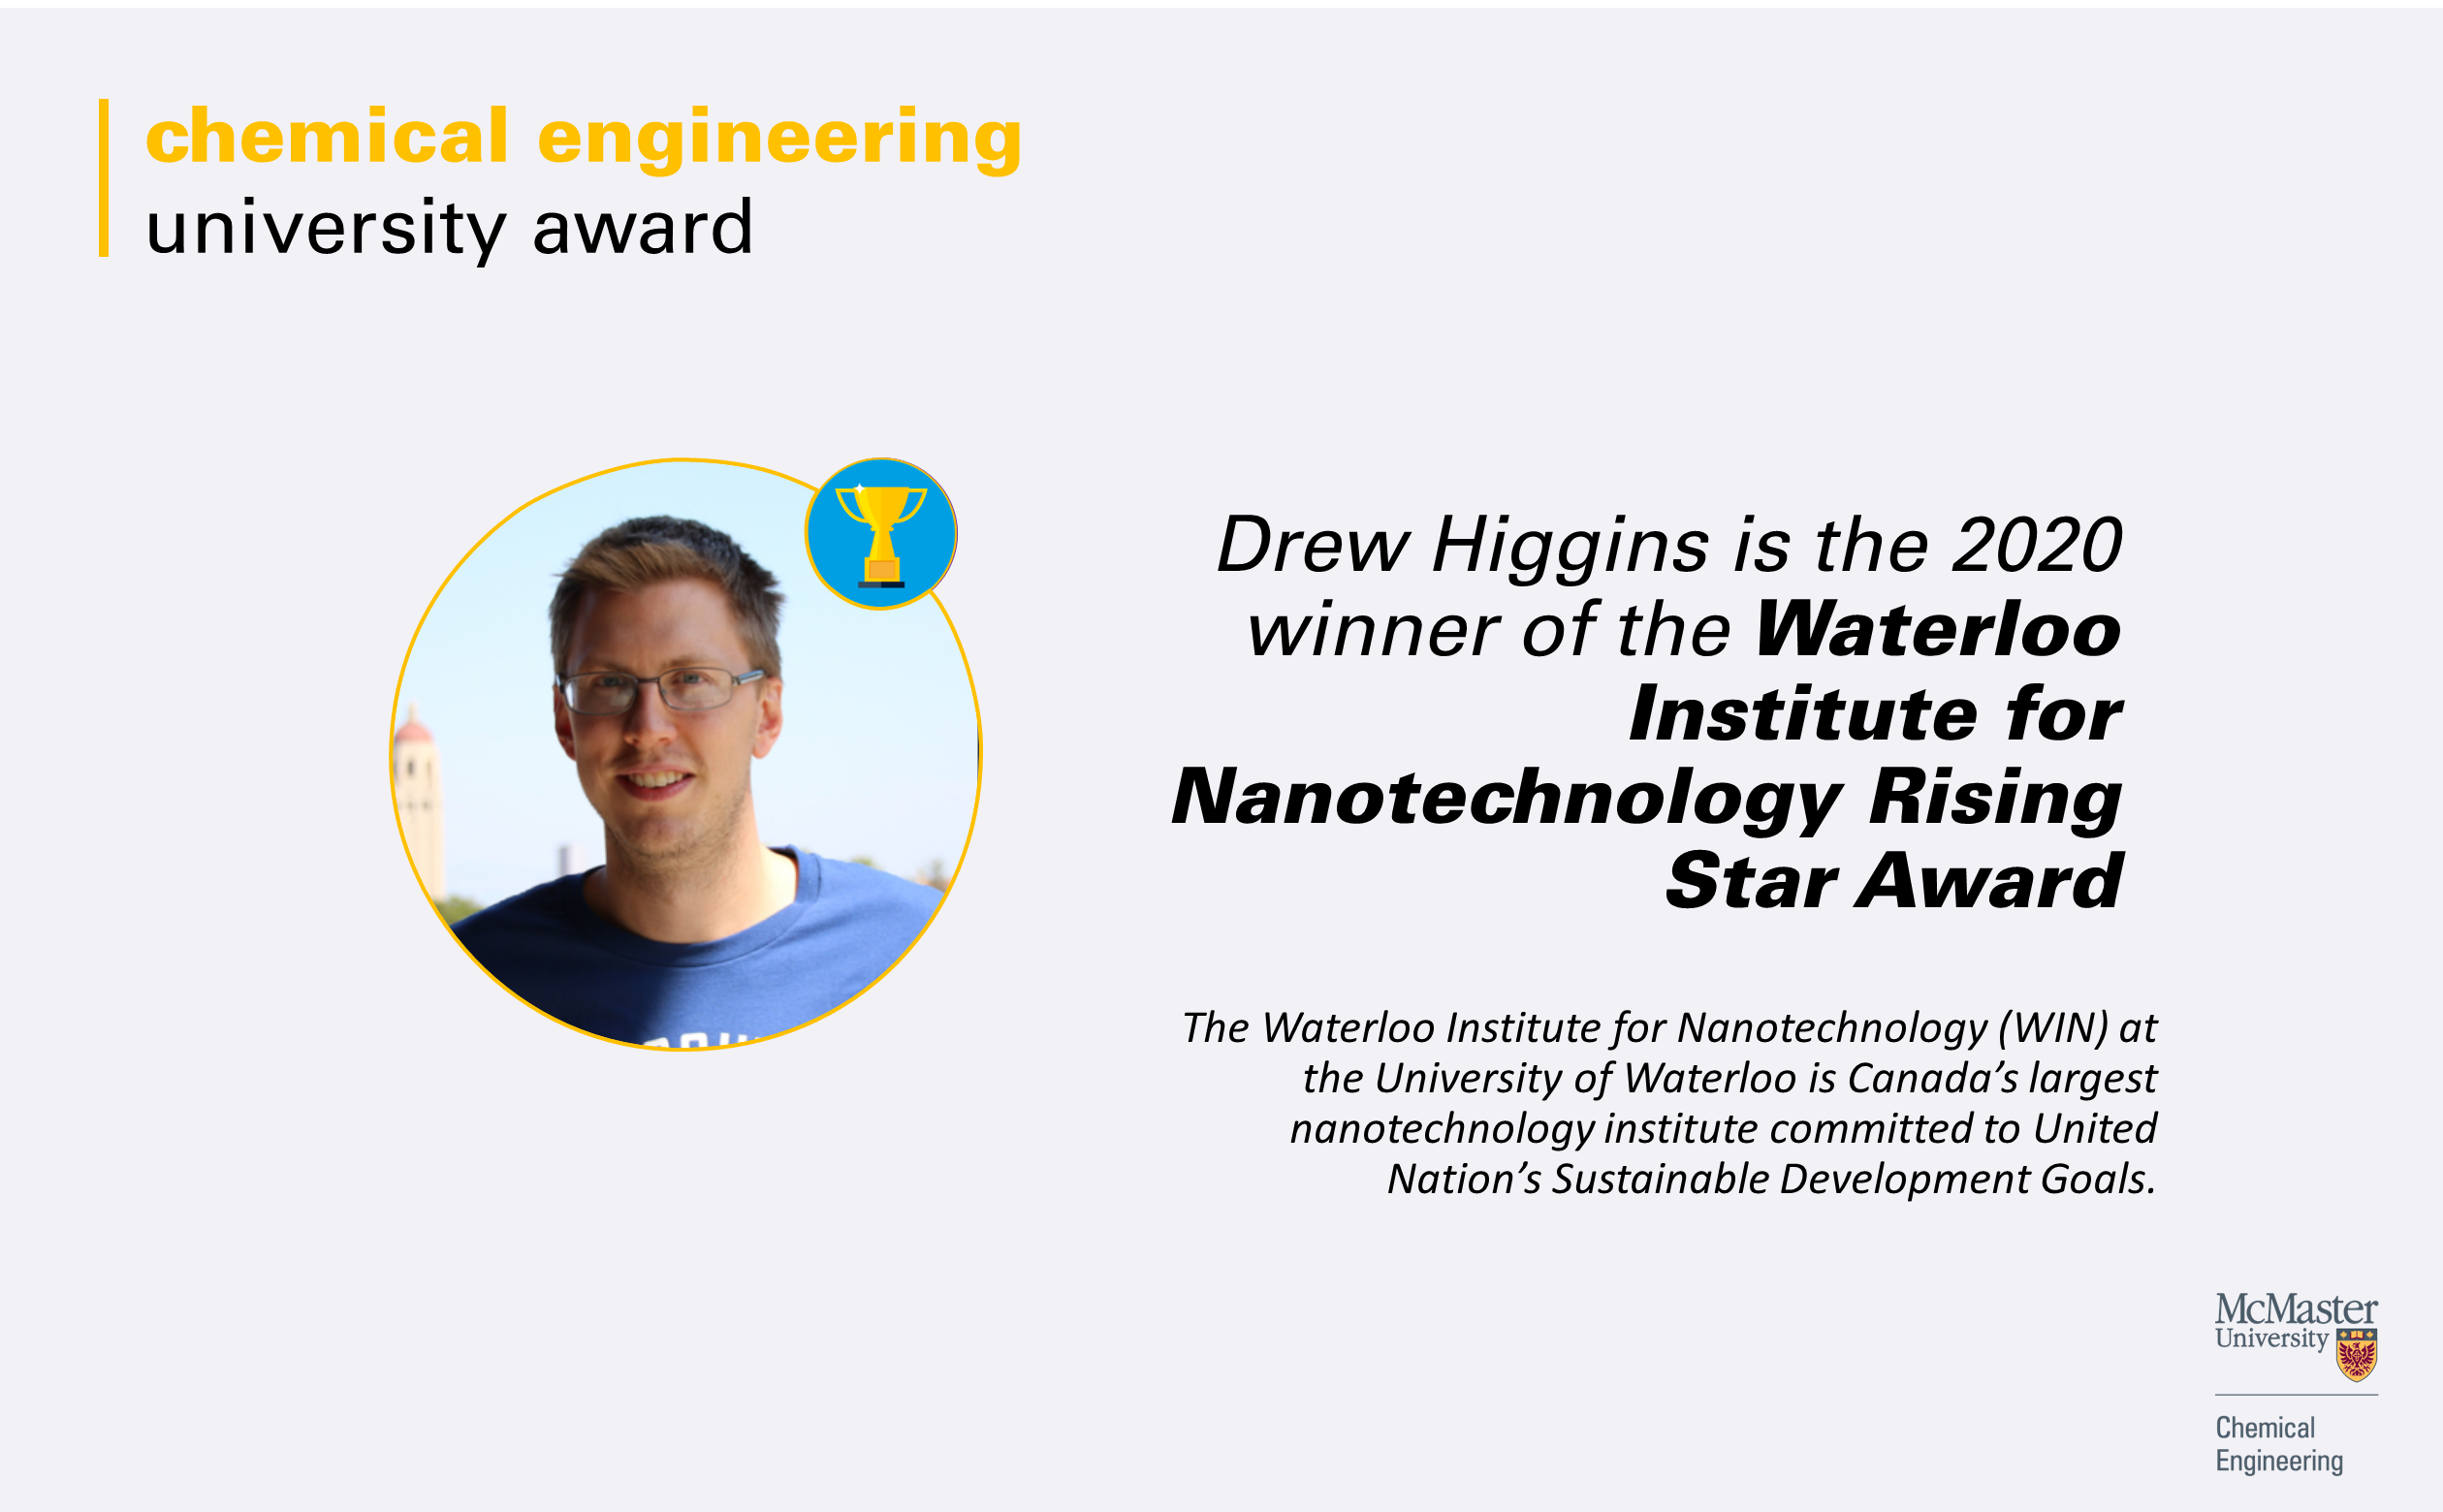 Winner of the 2020 Waterloo Institute for Nanotechnology Rising Star Award